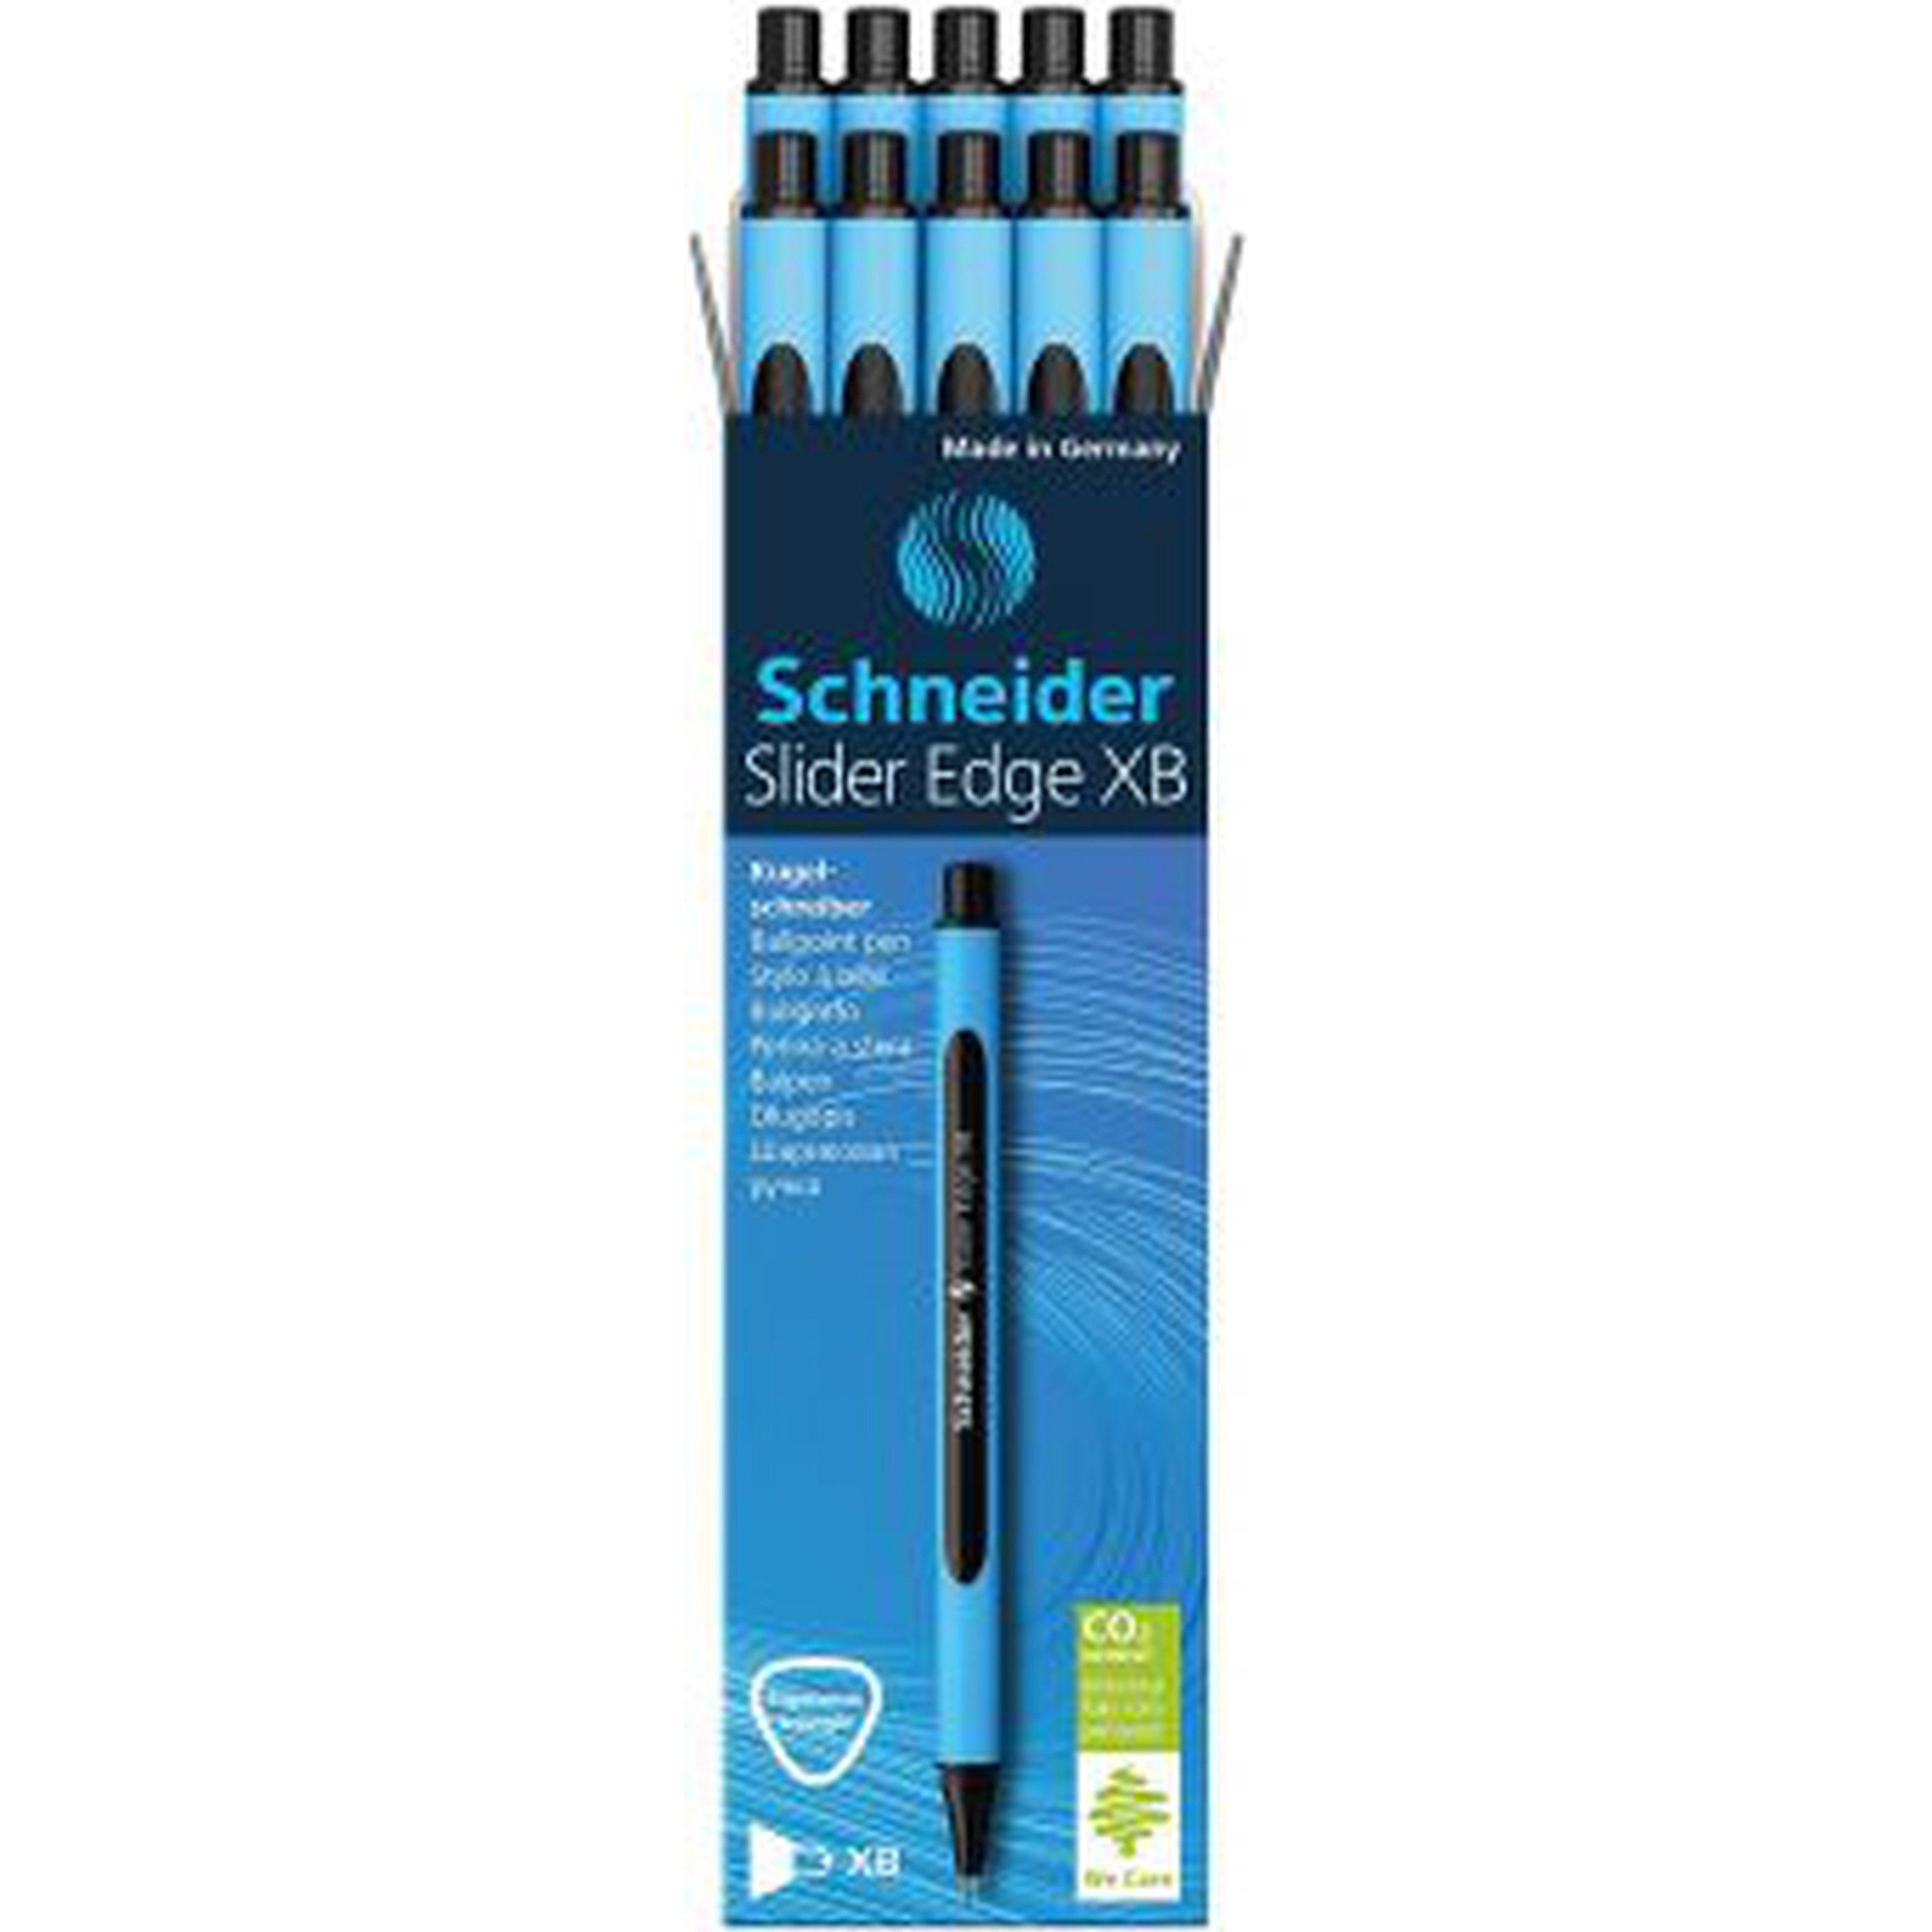 Schneider Slider Edge Xb Ballpoint Pen Blue Box Of 10 Pens-Pens-Schneider-Black-Star Light Kuwait